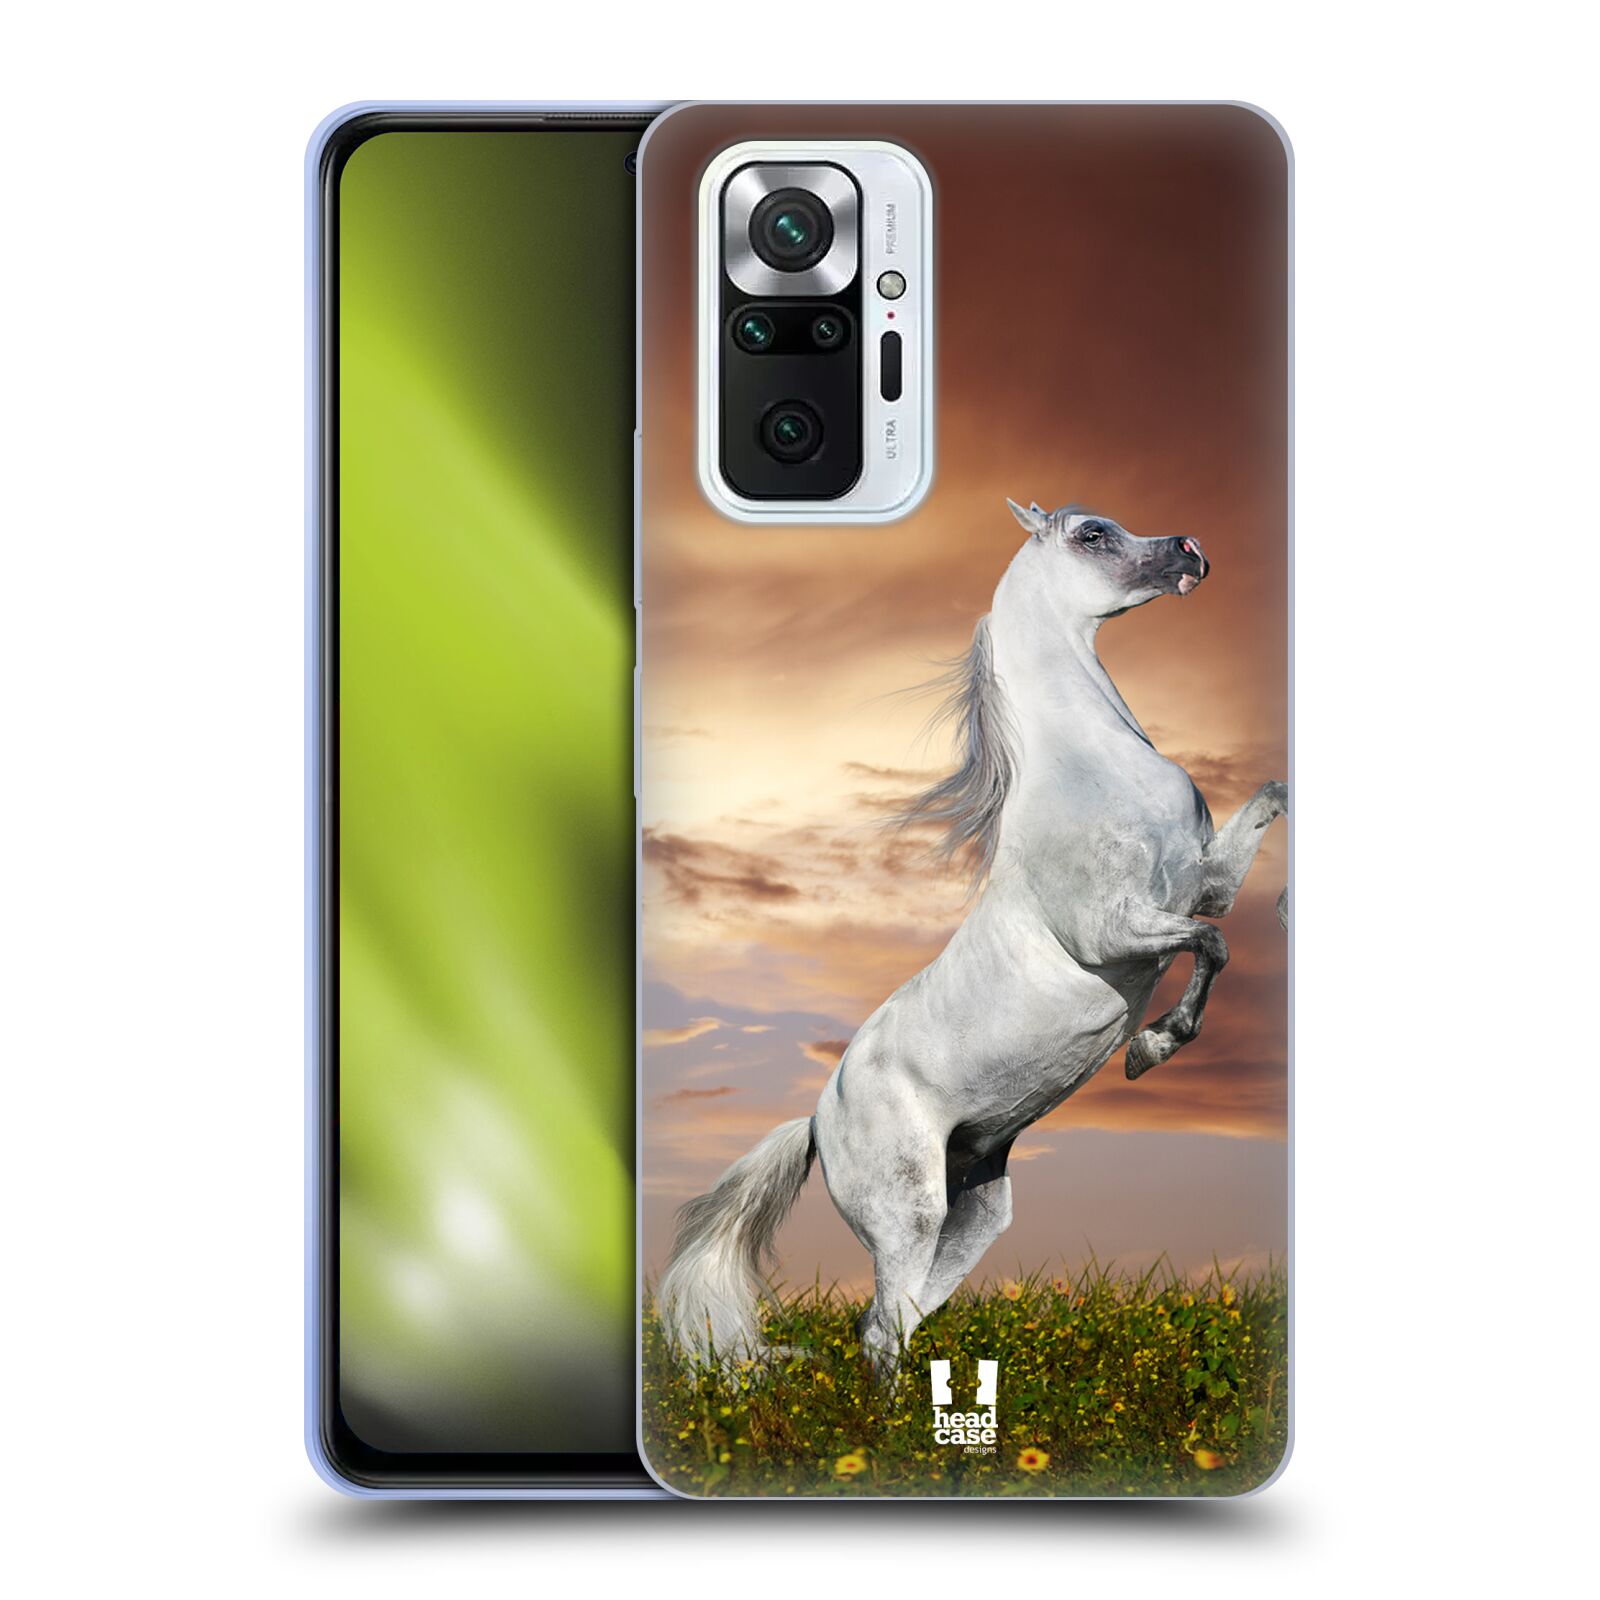 Zadní obal pro mobil Xiaomi Redmi Note 10 PRO - HEAD CASE - Svět zvířat divoký kůň